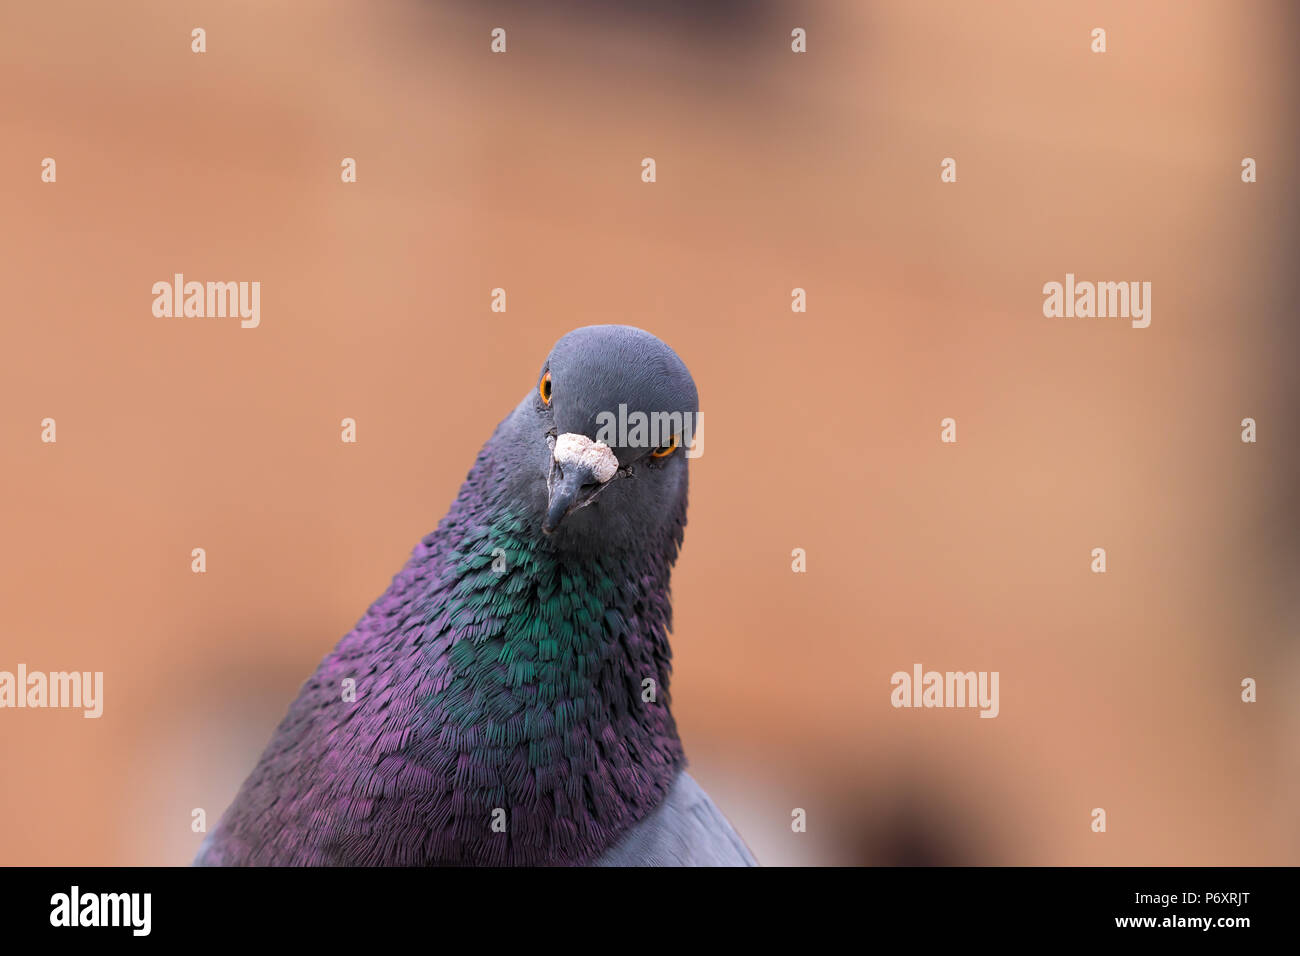 pigeon staring at camera Stock Photo